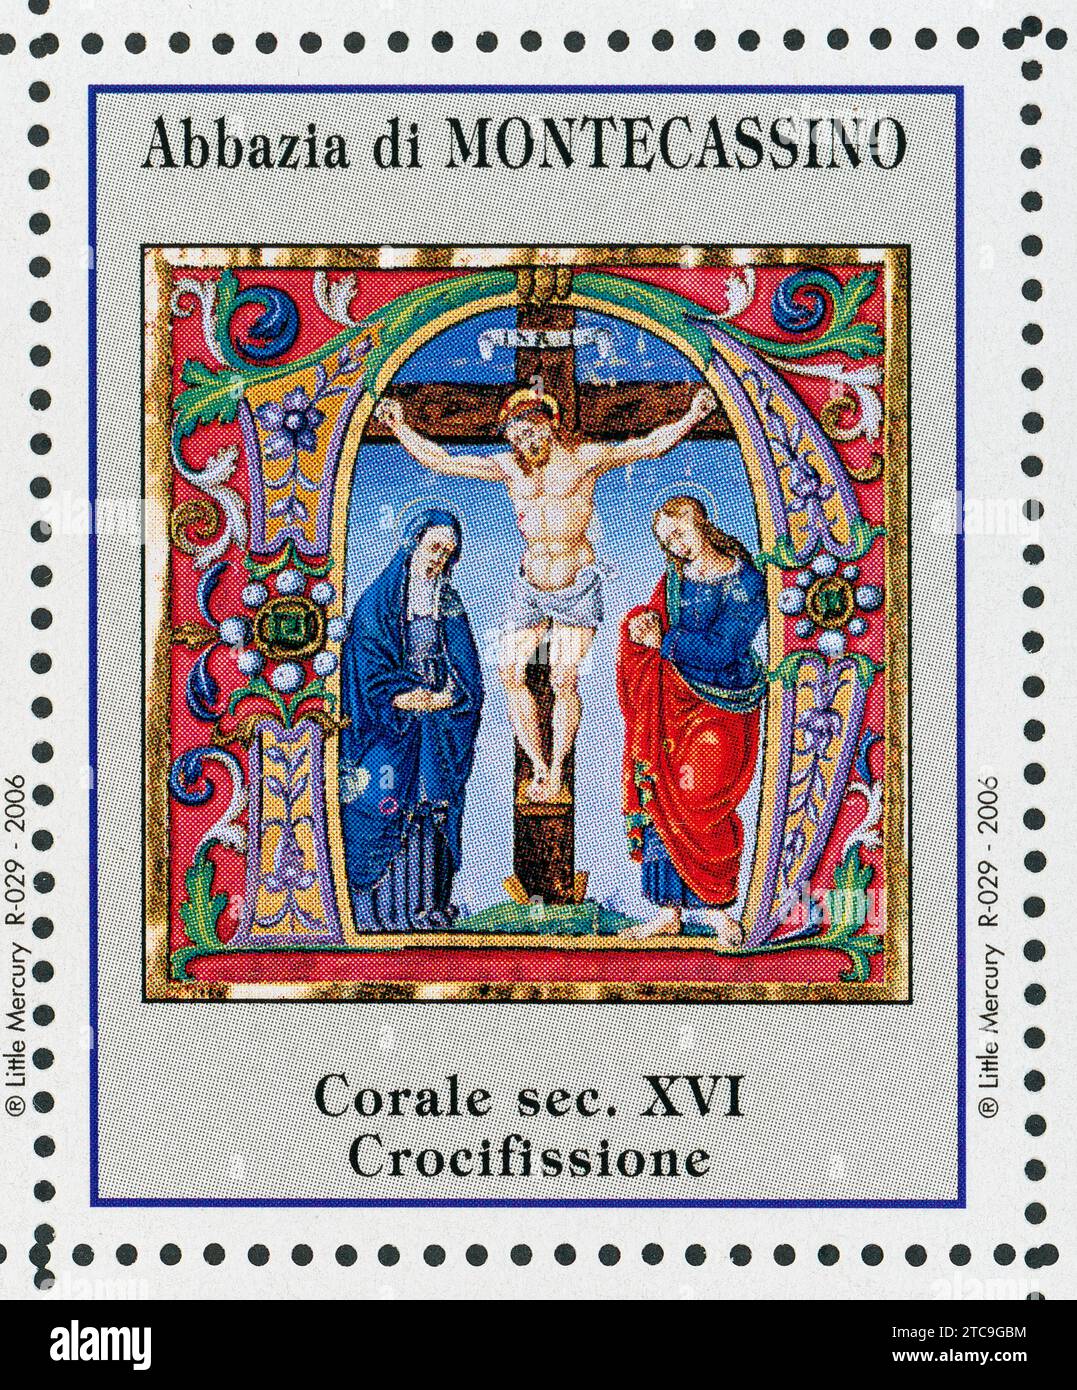 La Crocifissione. Francobolli abbazia di Montecassino. coro del xvi secolo. Foto Stock